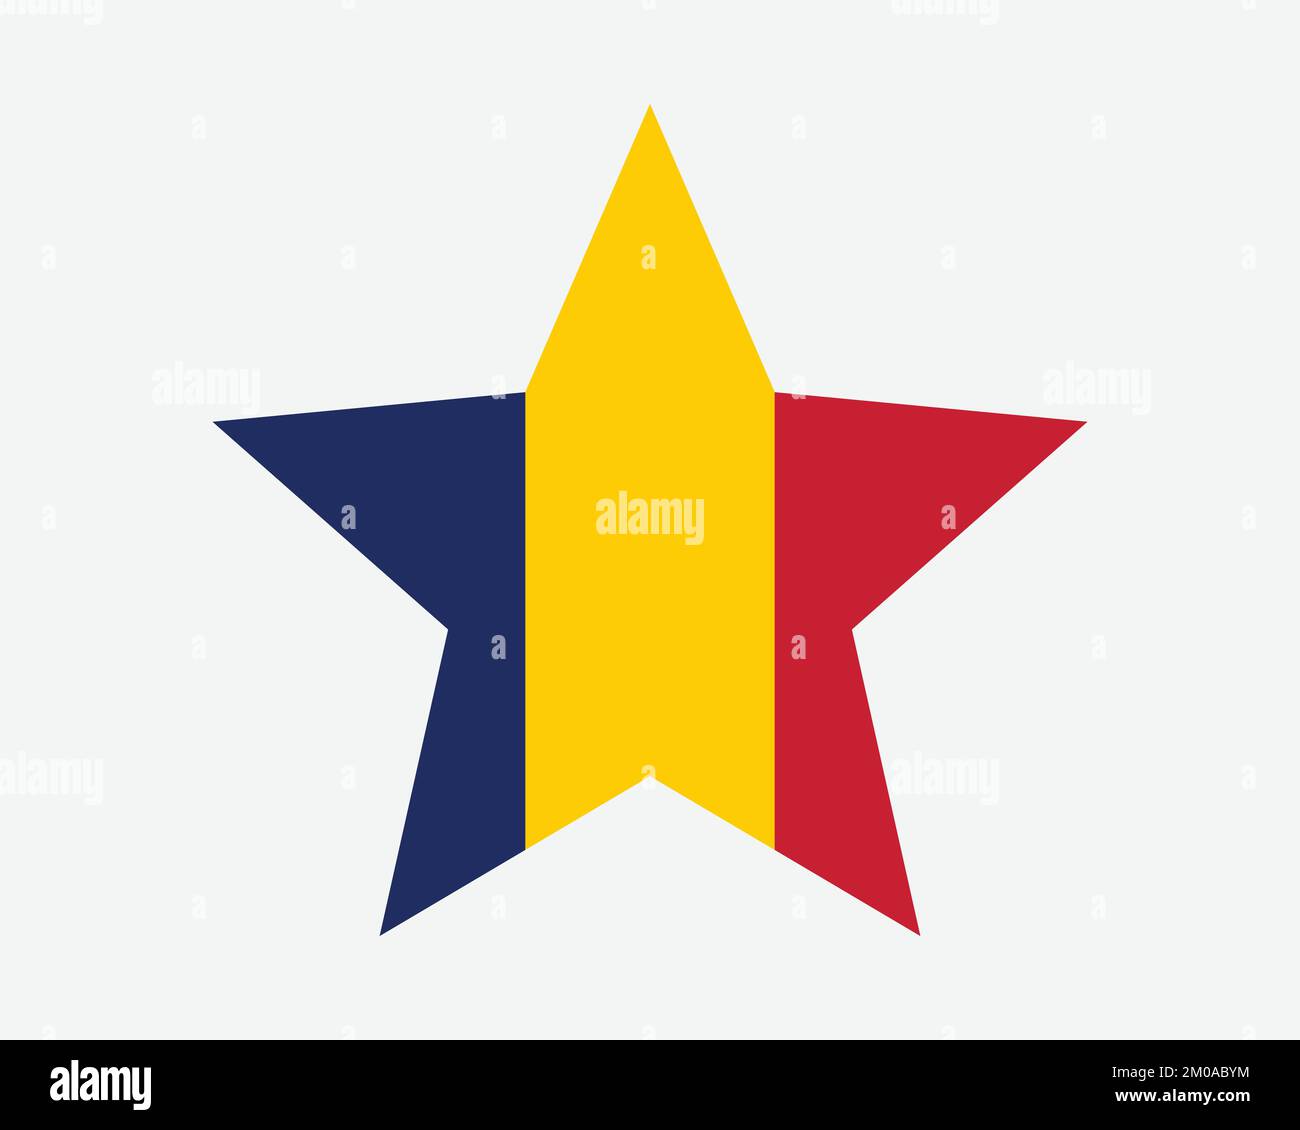 Chad Star Flag. Die Flagge Der Tschadischen Sternenform. Symbol für länderspezifisches Banner Symbol Vektor 2D flache Druckvorlagen Grafik Stock Vektor